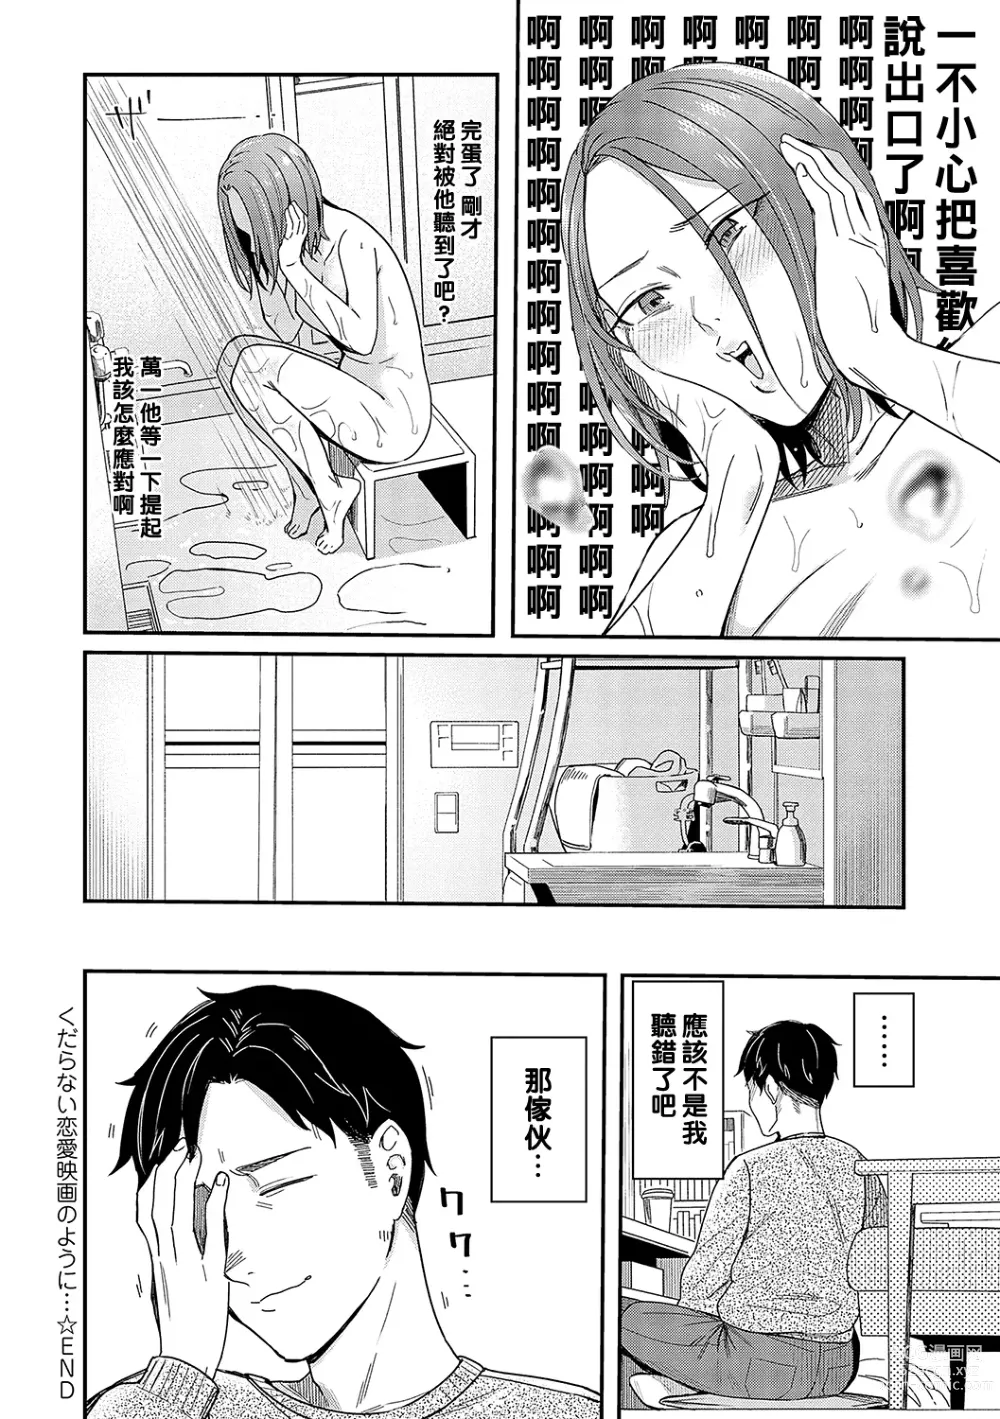 Page 32 of manga Kudaranai Renai Eiga no You ni... - Like a crappy romance movie...